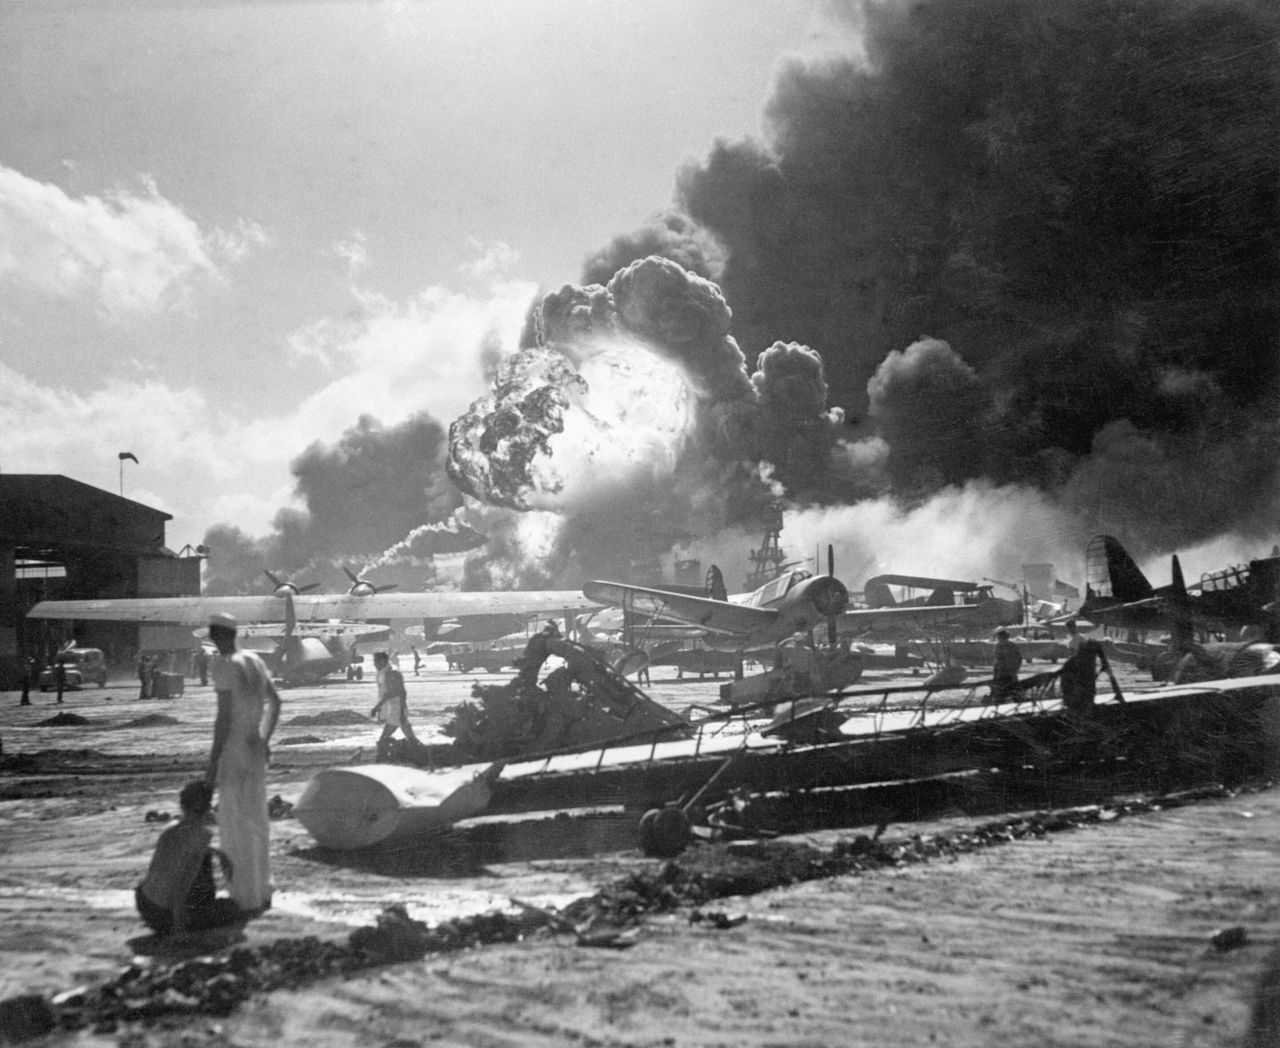 日本海軍機動部隊から発進した航空部隊の奇襲攻撃を受けつつある米ハワイ諸島オアフ島真珠湾内にあるフォード島基地。手前は水上機、飛行艇基地。爆発あるいは炎上しているのは艦船群（アメリカ・ハワイ）12月7日